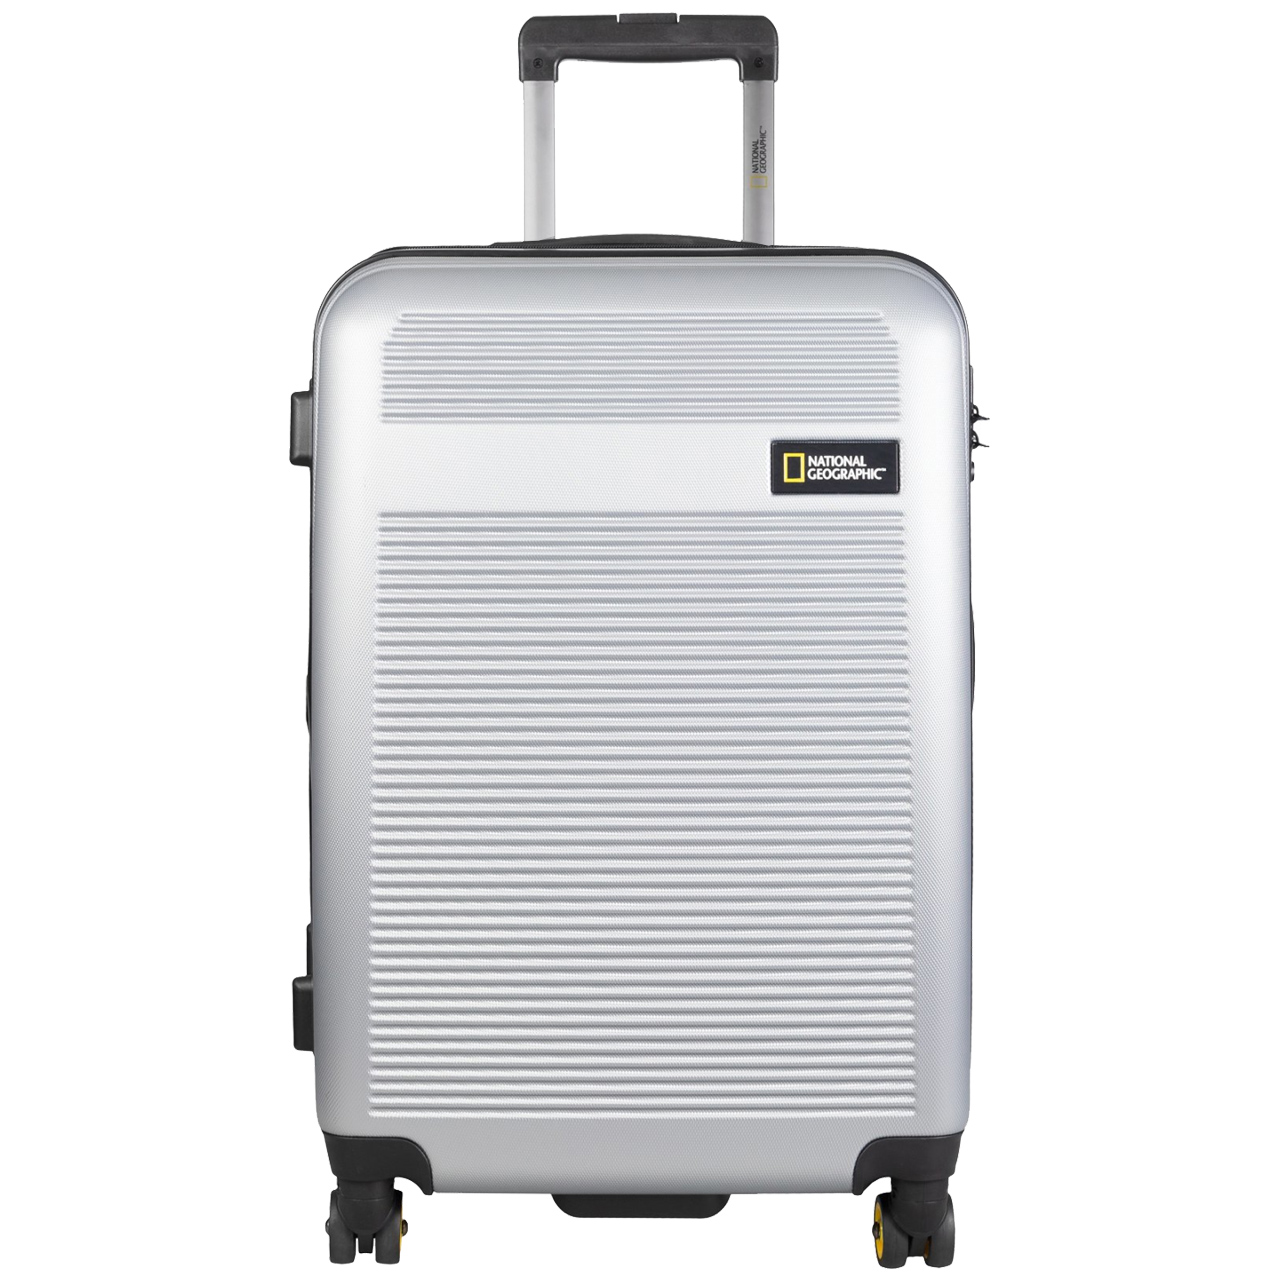 نکته خرید - قیمت روز چمدان نشنال جئوگرافیک مدل AERODROME 700510 - 24 خرید